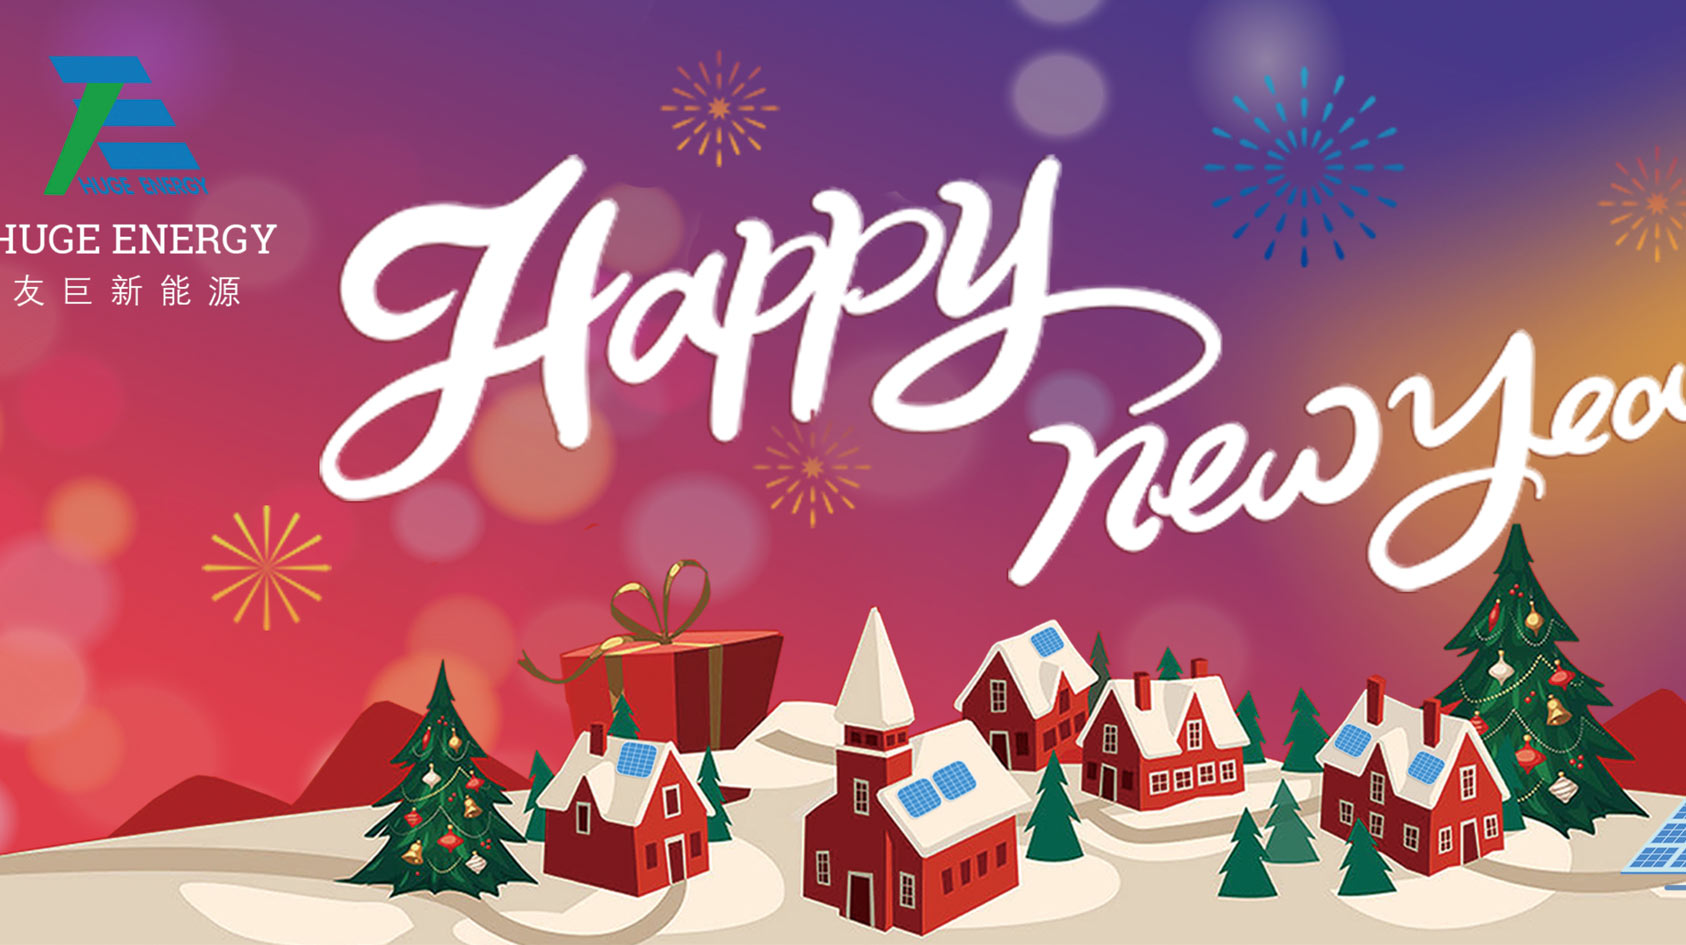 Bij het begin van het nieuwe jaar wenst Huge Energy u een gelukkig nieuwjaar!